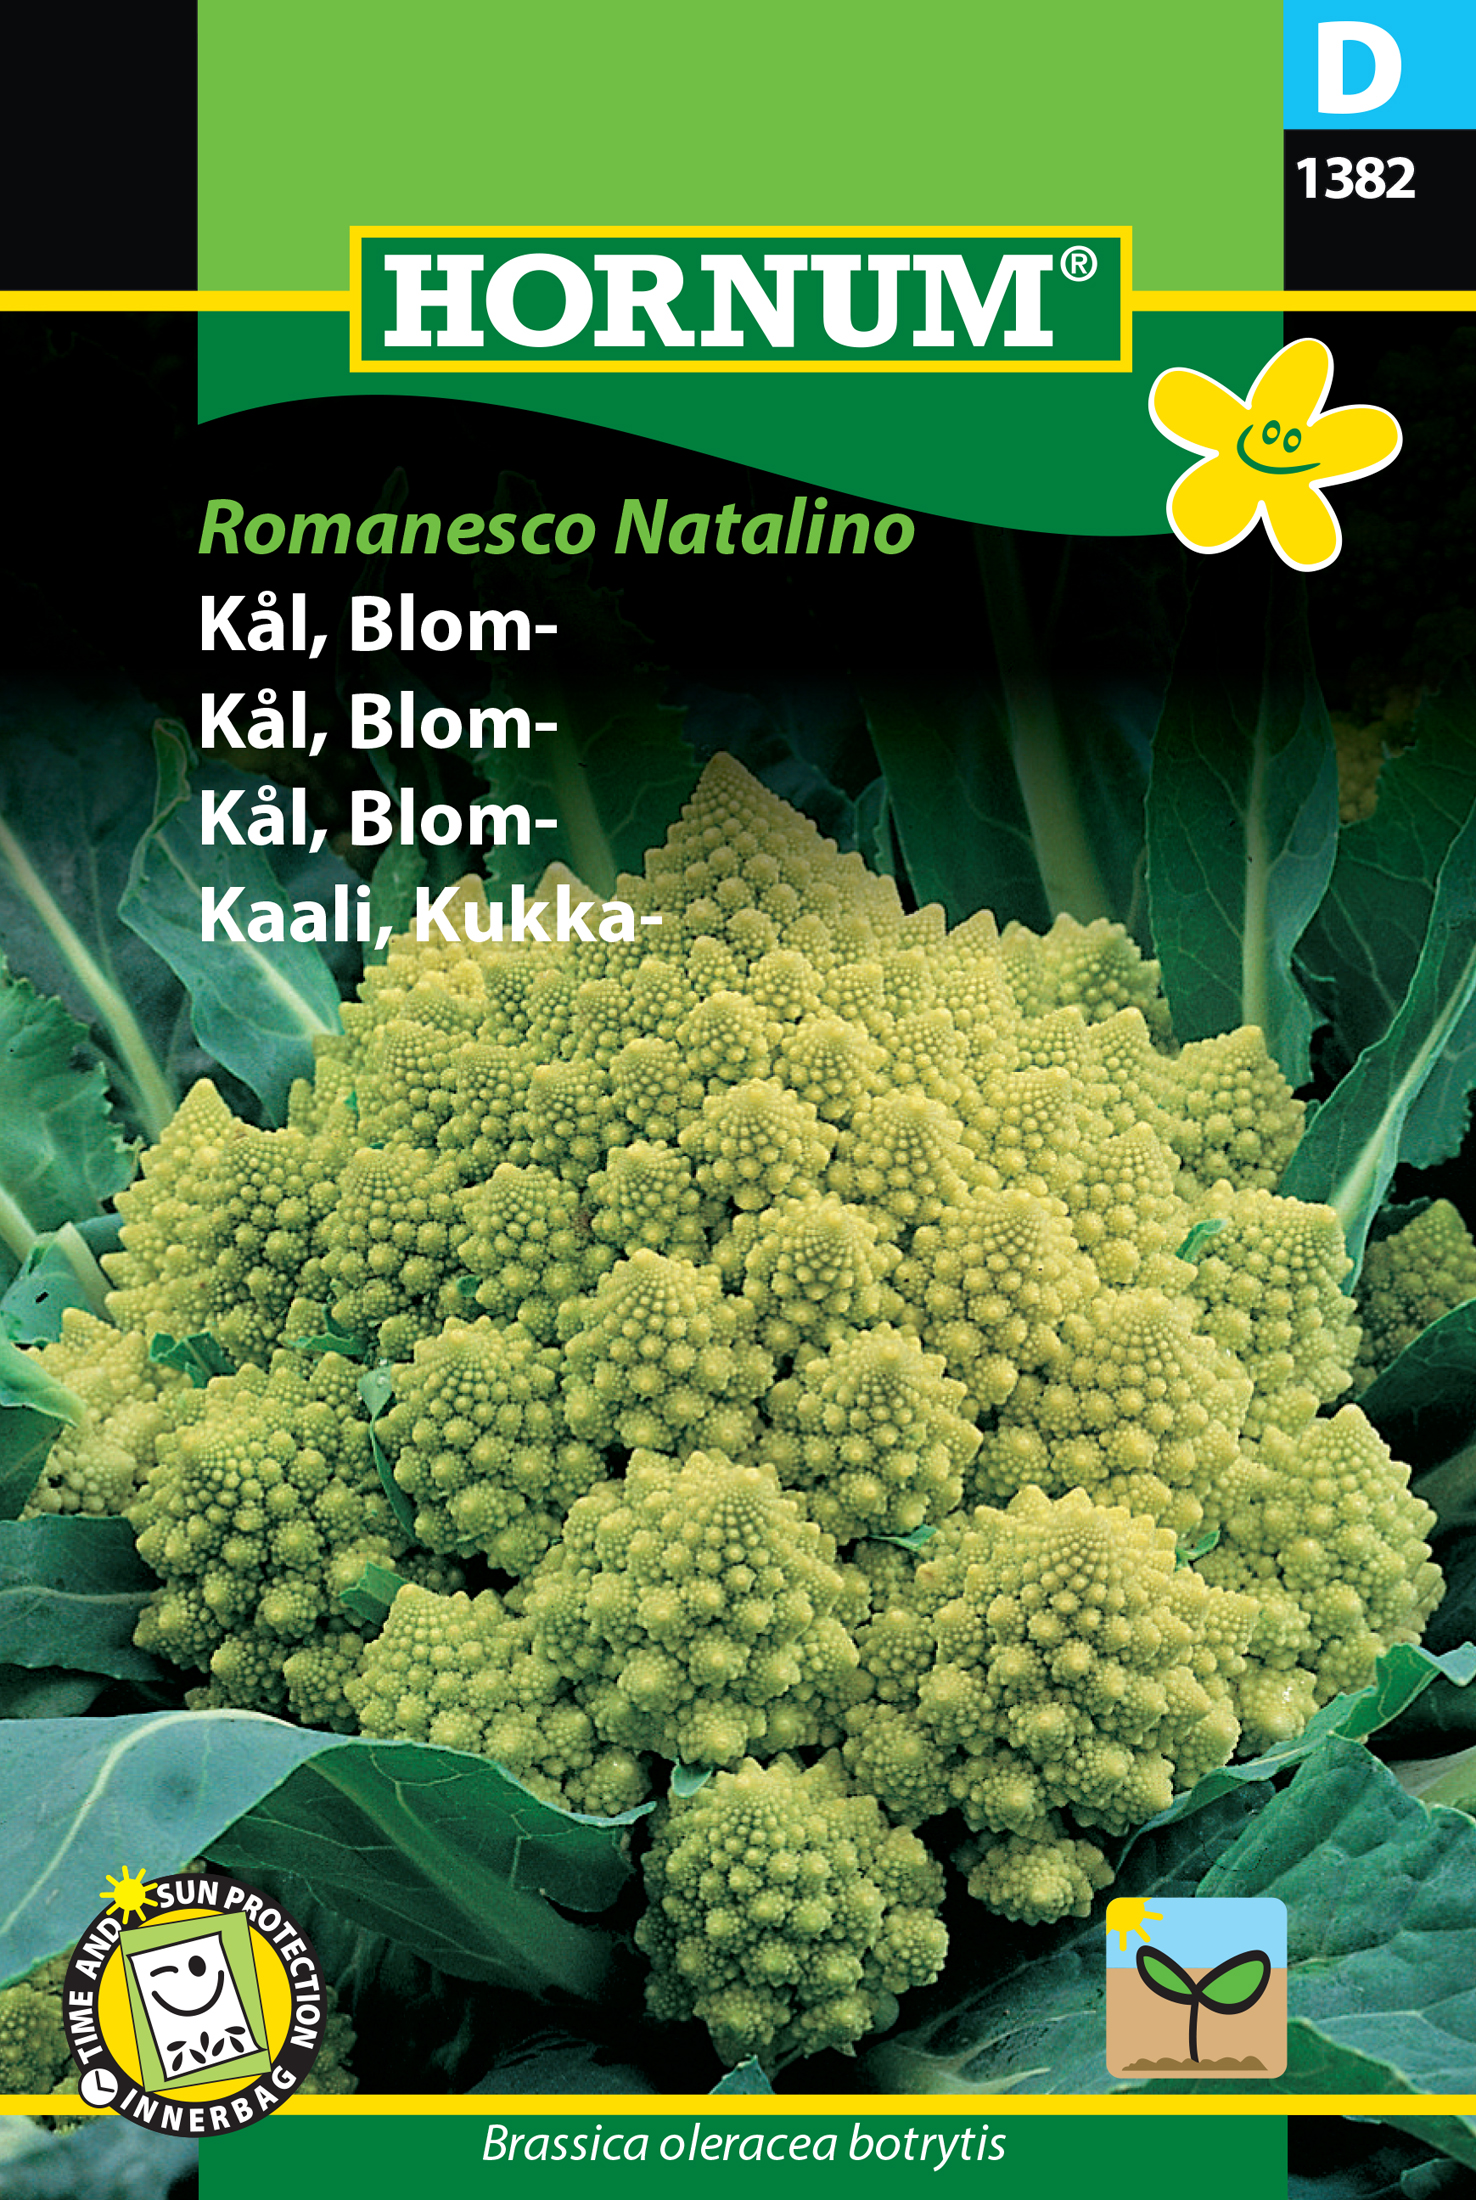 Blomkål 'Romanesco Natalino' frö